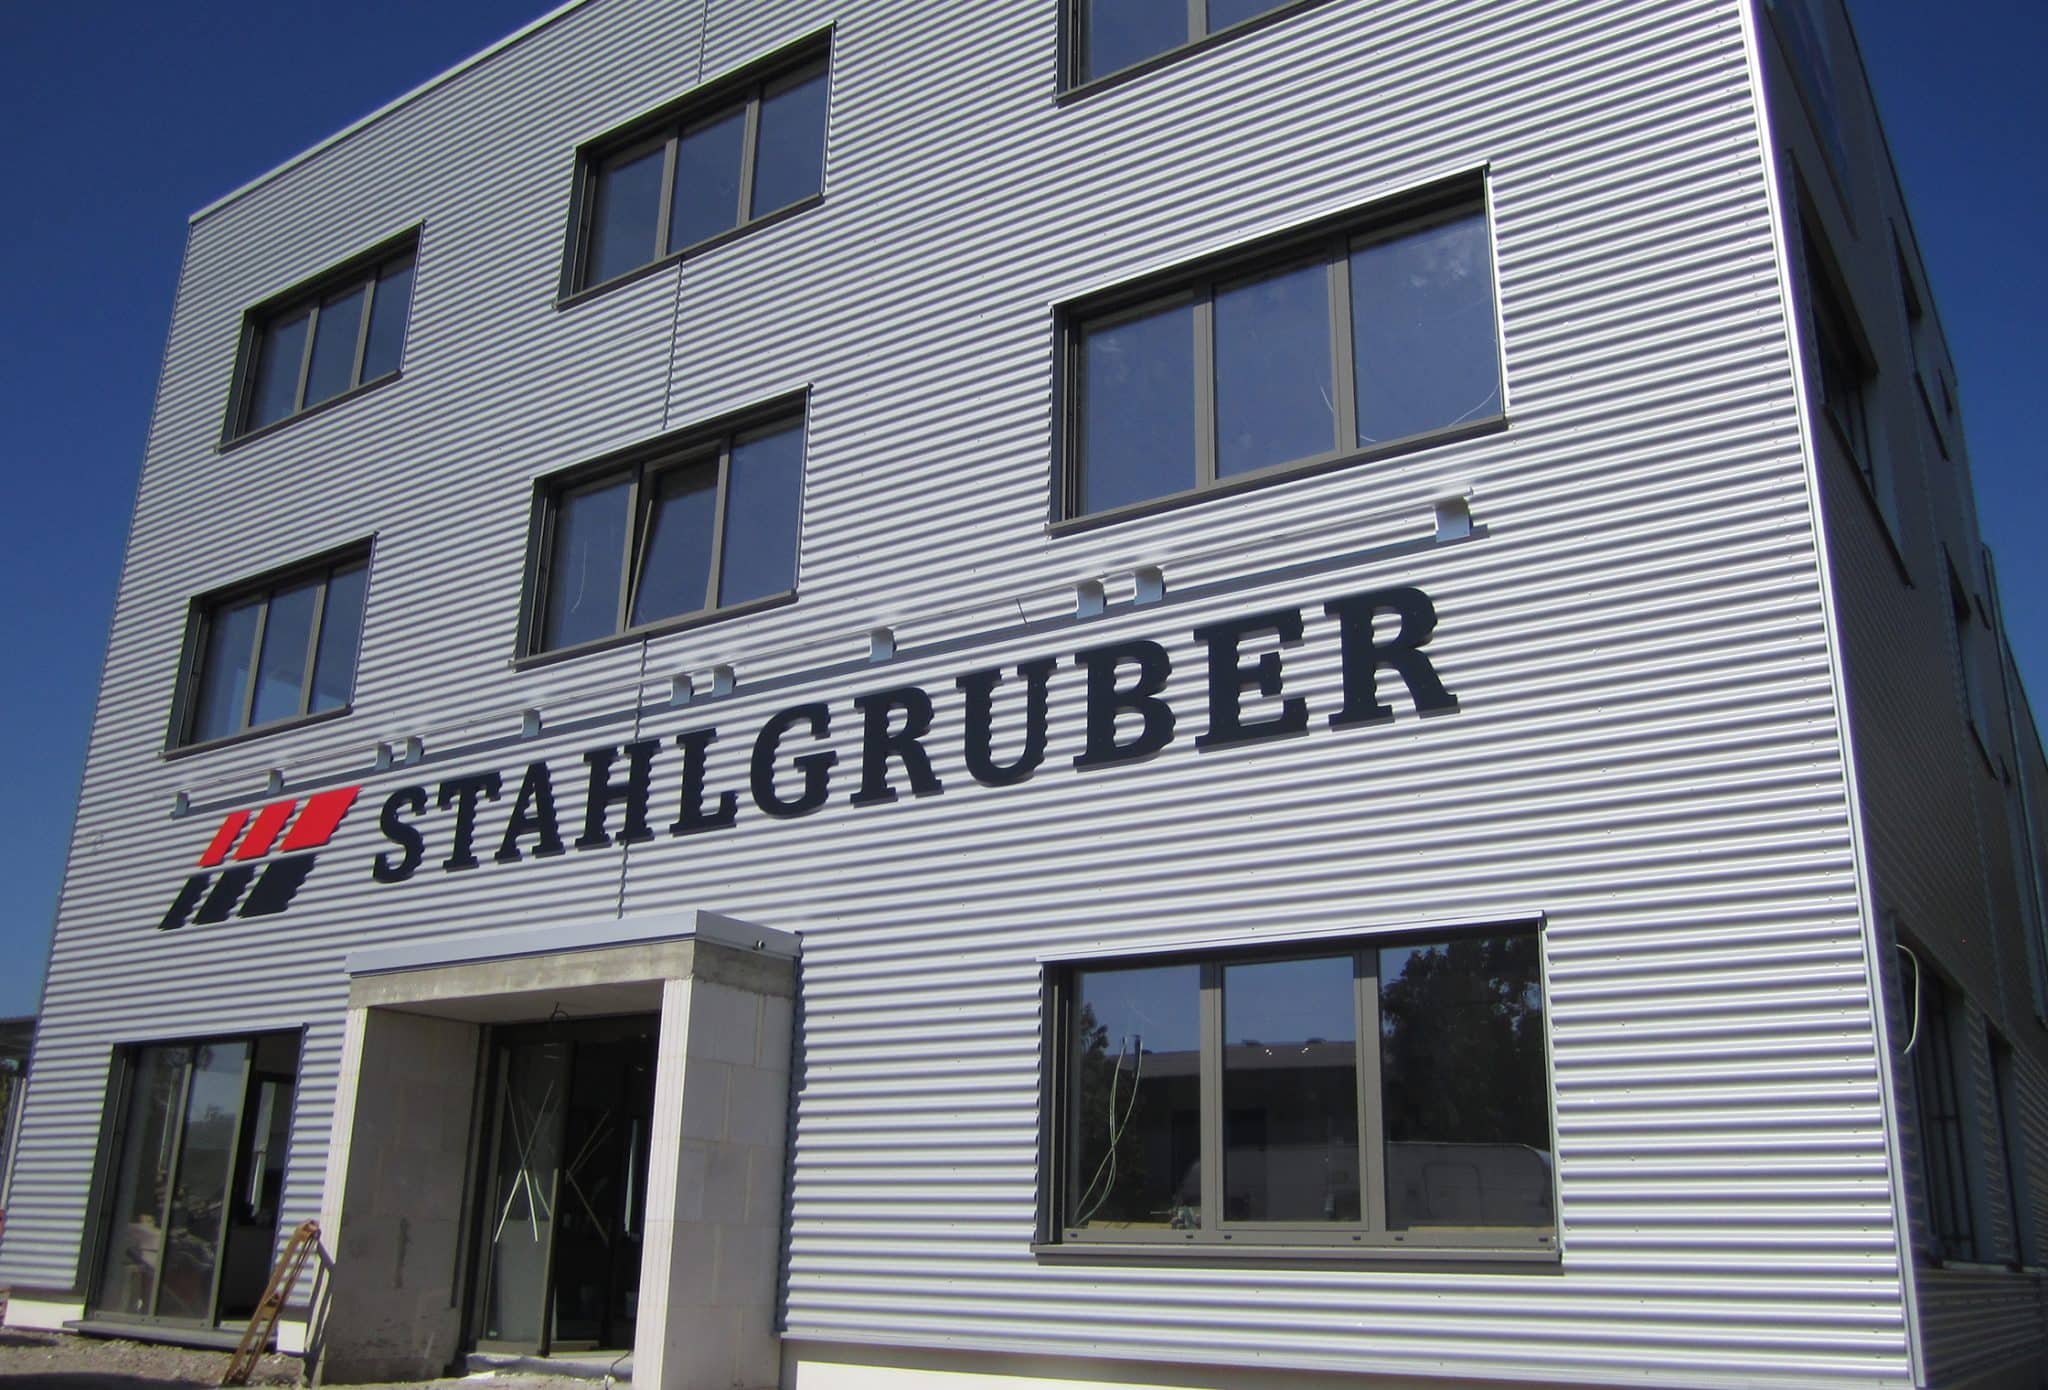 Neubau für Stahlgruber in Karlsruhe